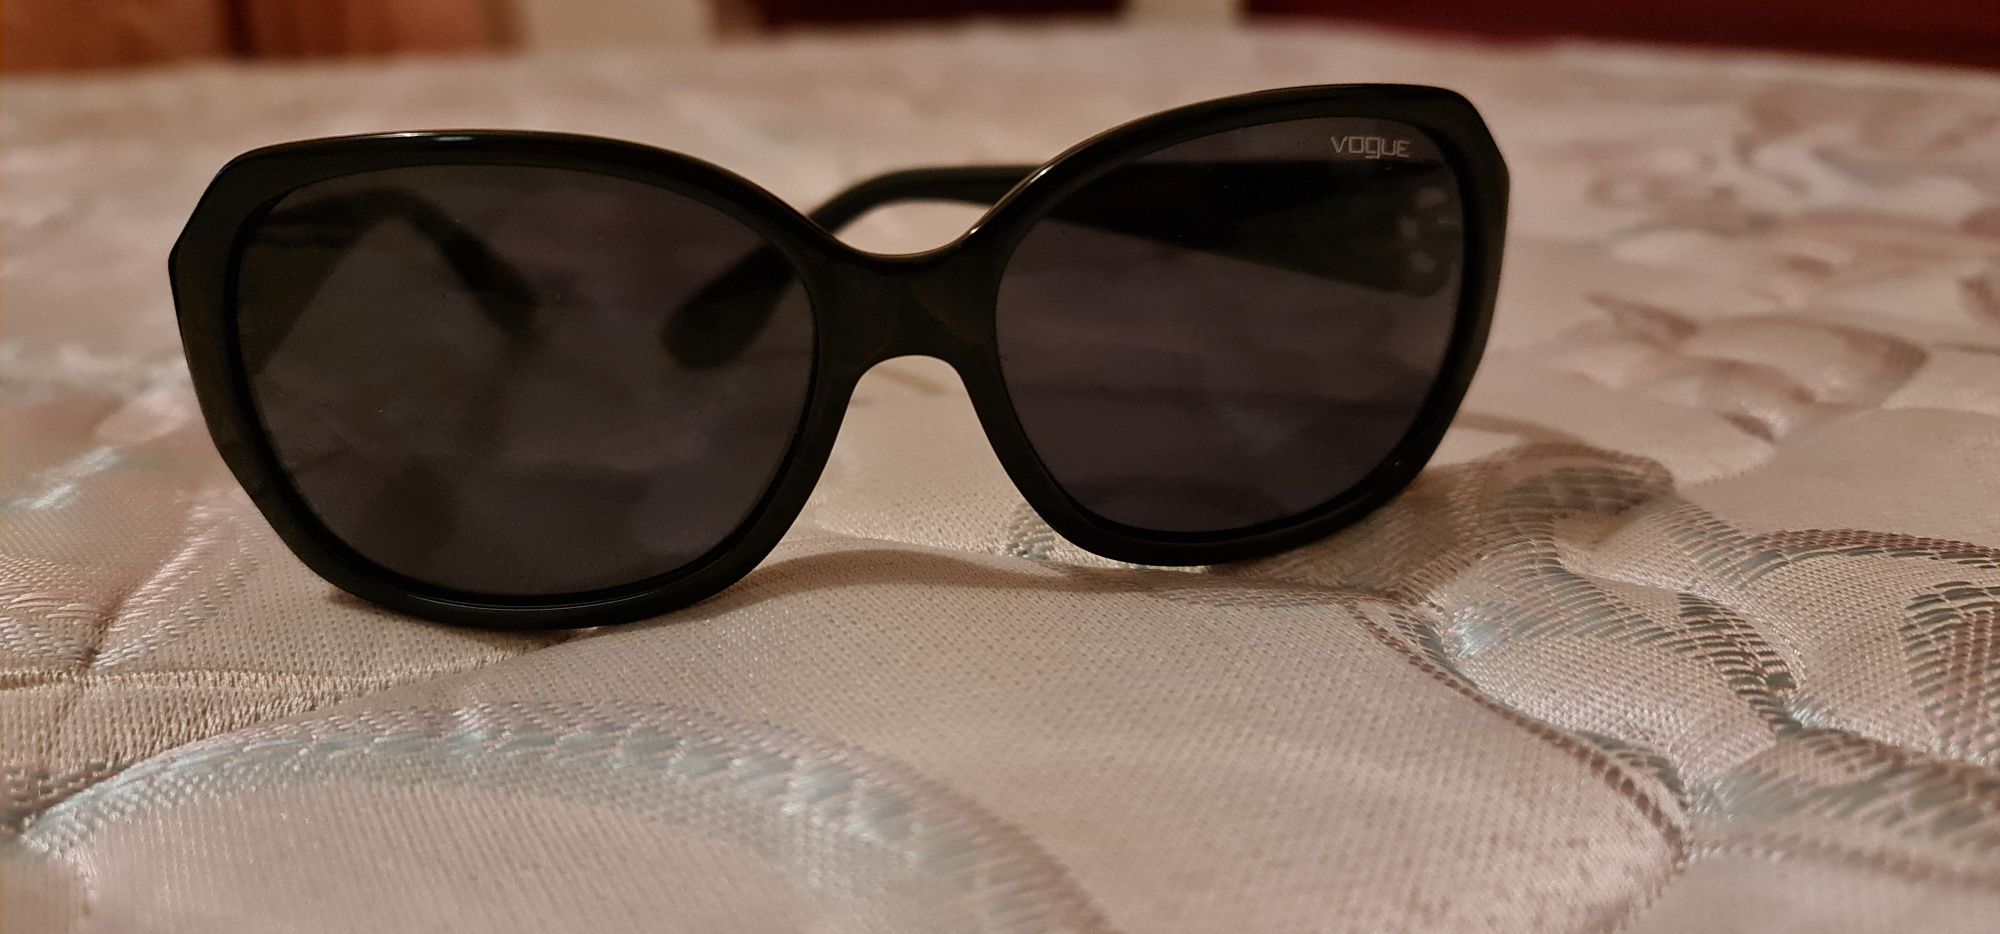 Oculos de sol vogue Areias • OLX Portugal